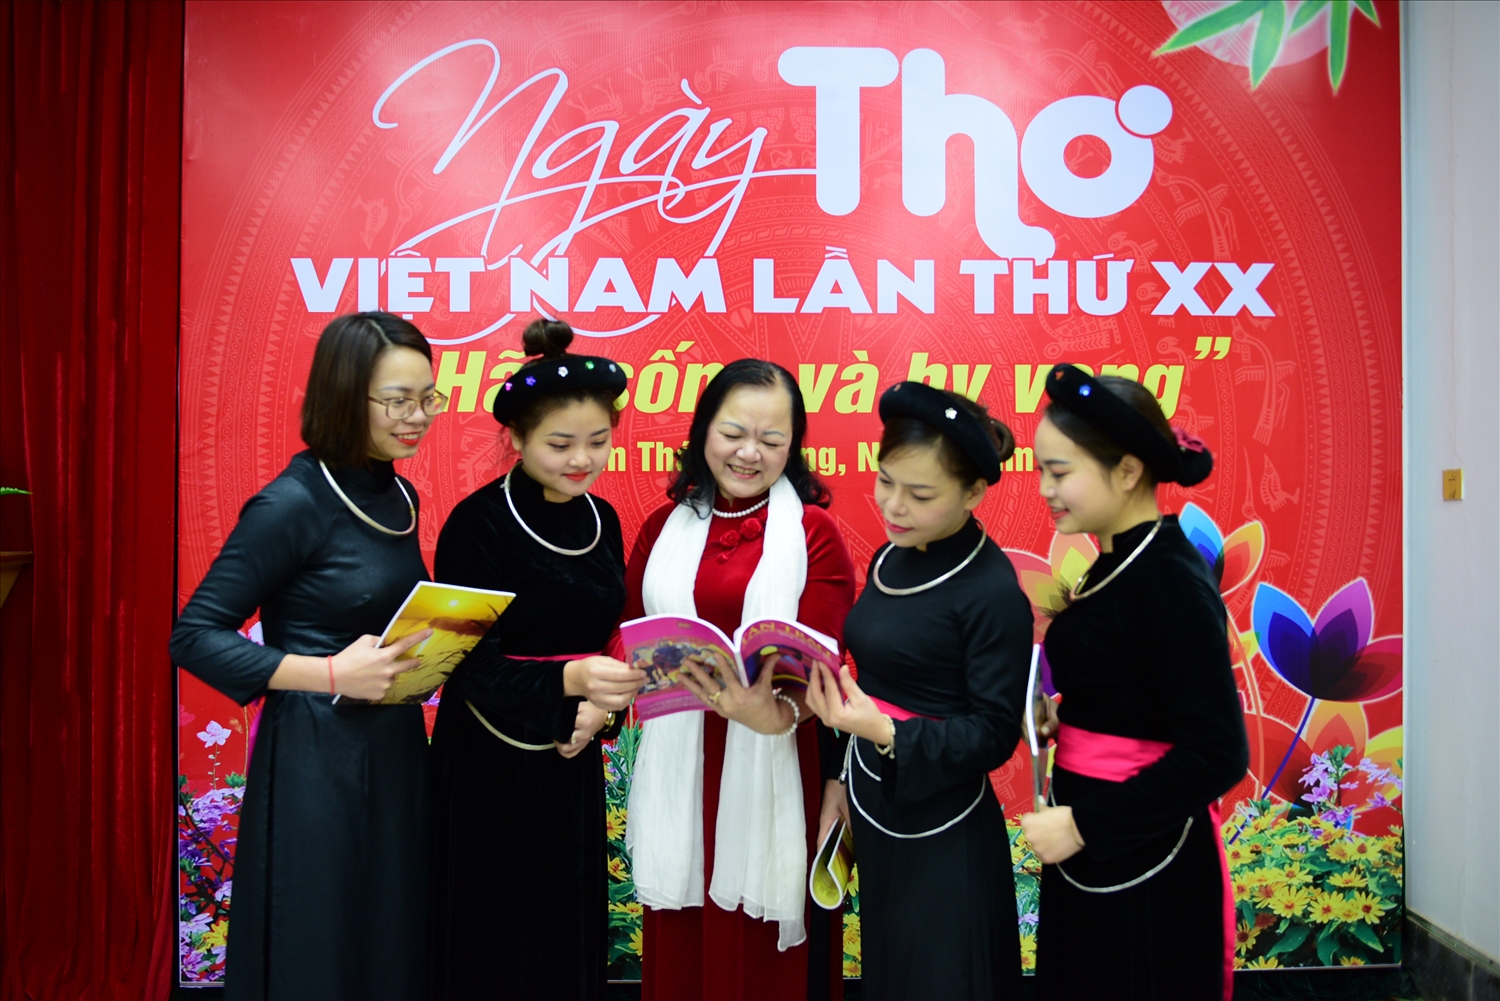 Nữ thi sỹ Trịnh Thứ (ngoài cùng bên trái) trao đổi kinh nghiệm sáng tác cùng các bạn văn chương